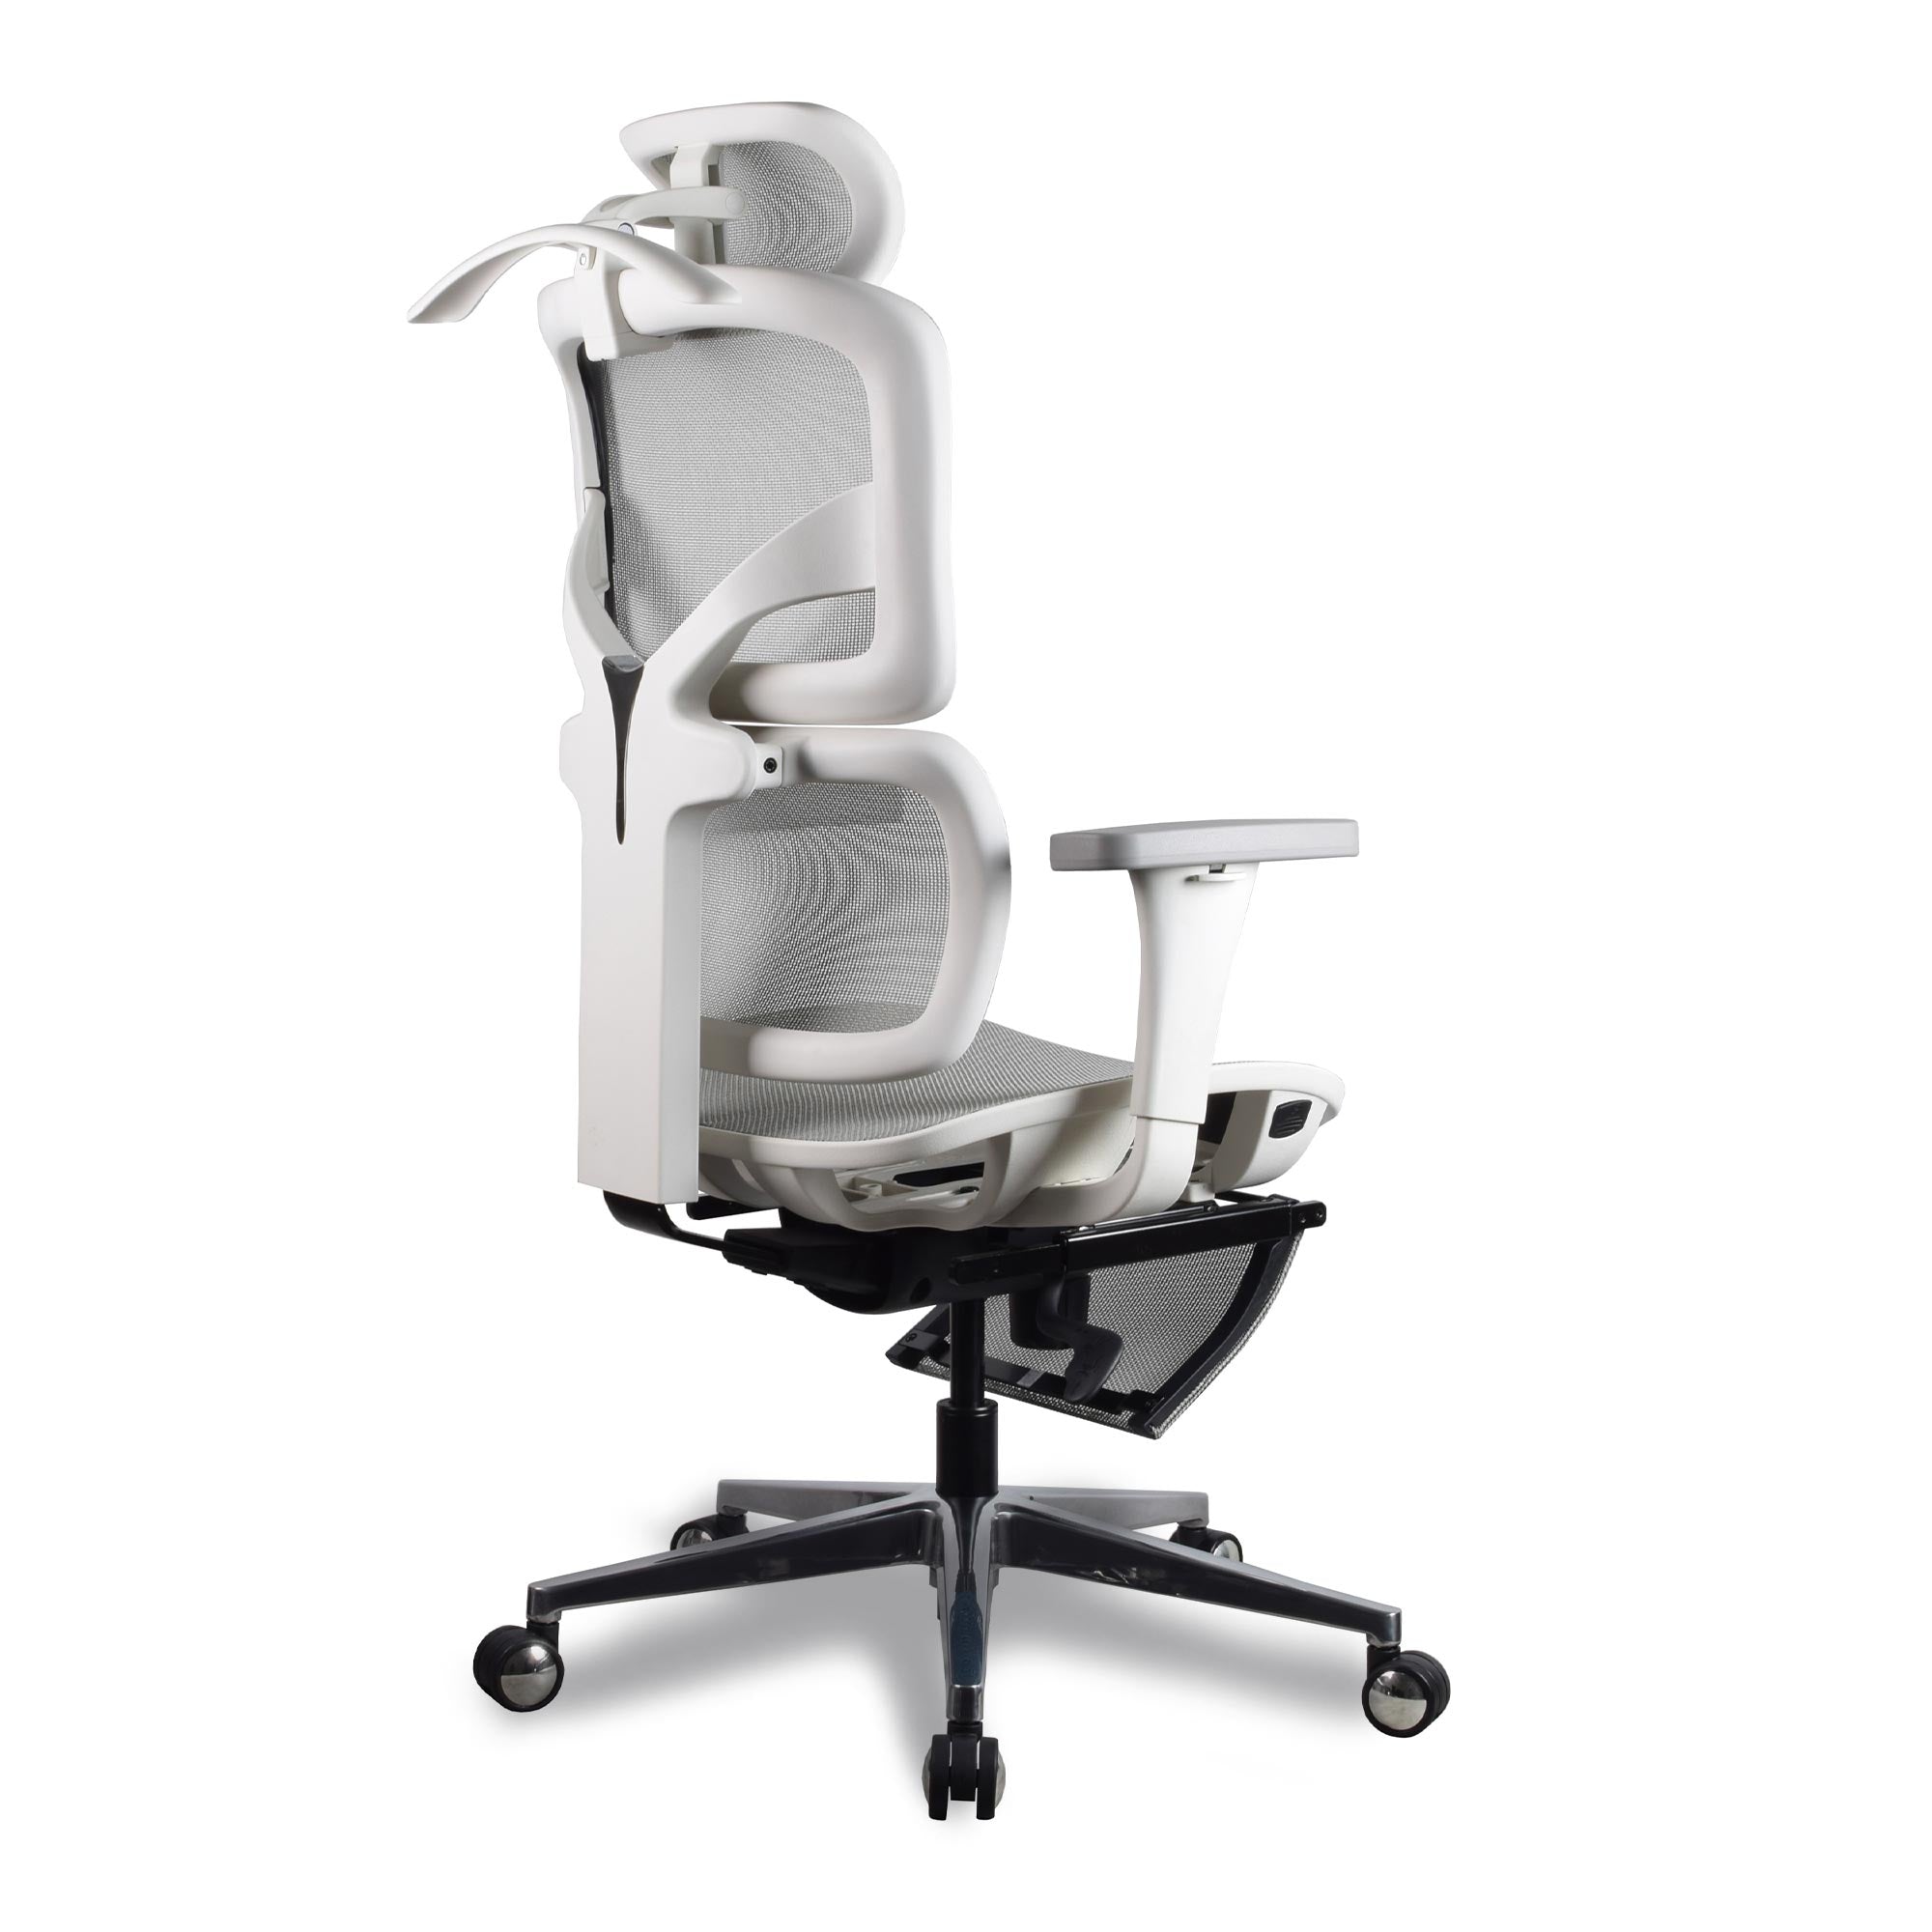 Chaise ergonomique - TERRANA Blanc / Gris en maille